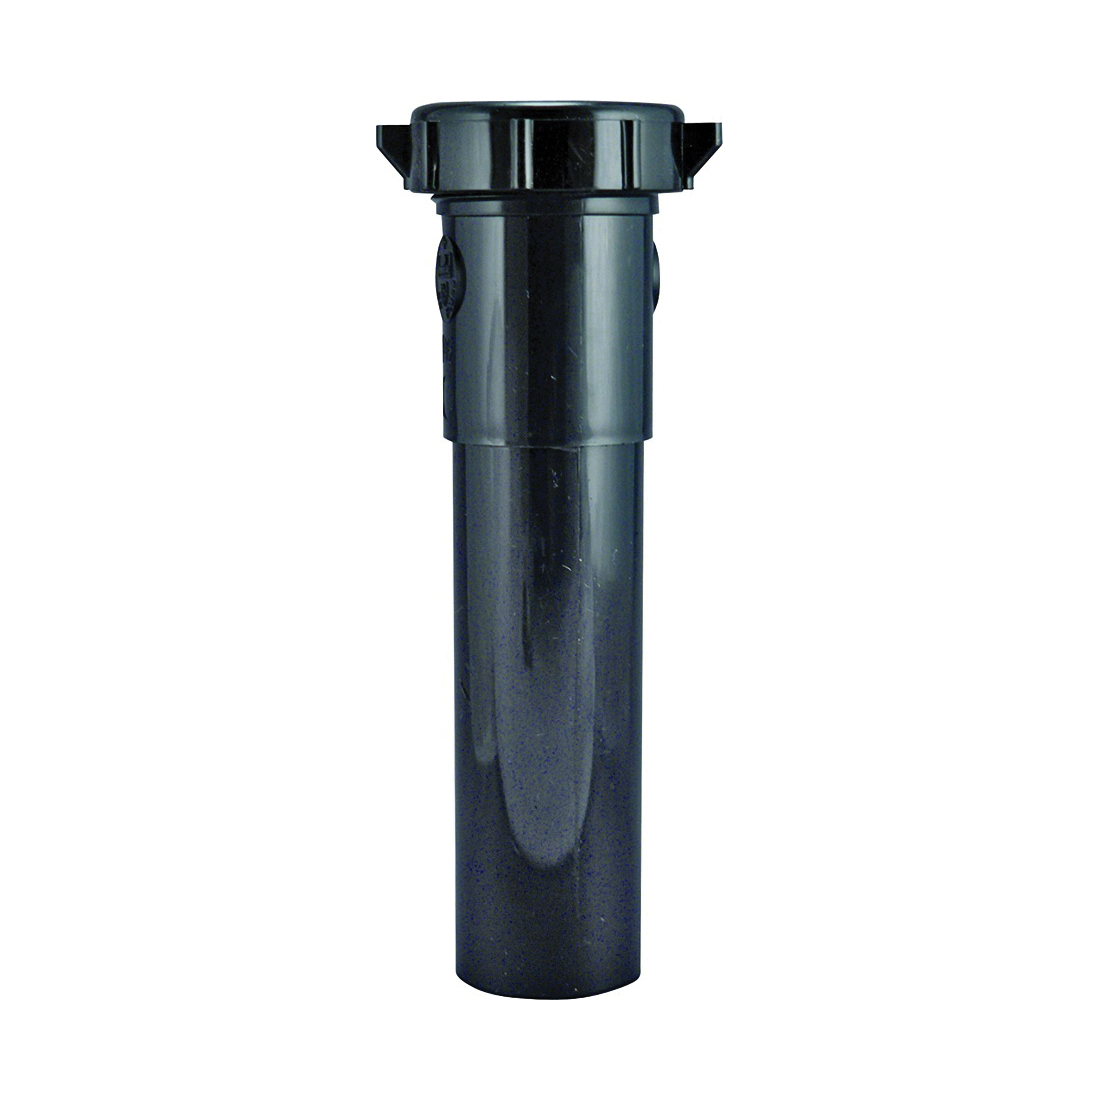 PP55-2B Pipe Extension Tube, 1-1/2 in, 6 in L, Slip-Joint, Plastic, Black